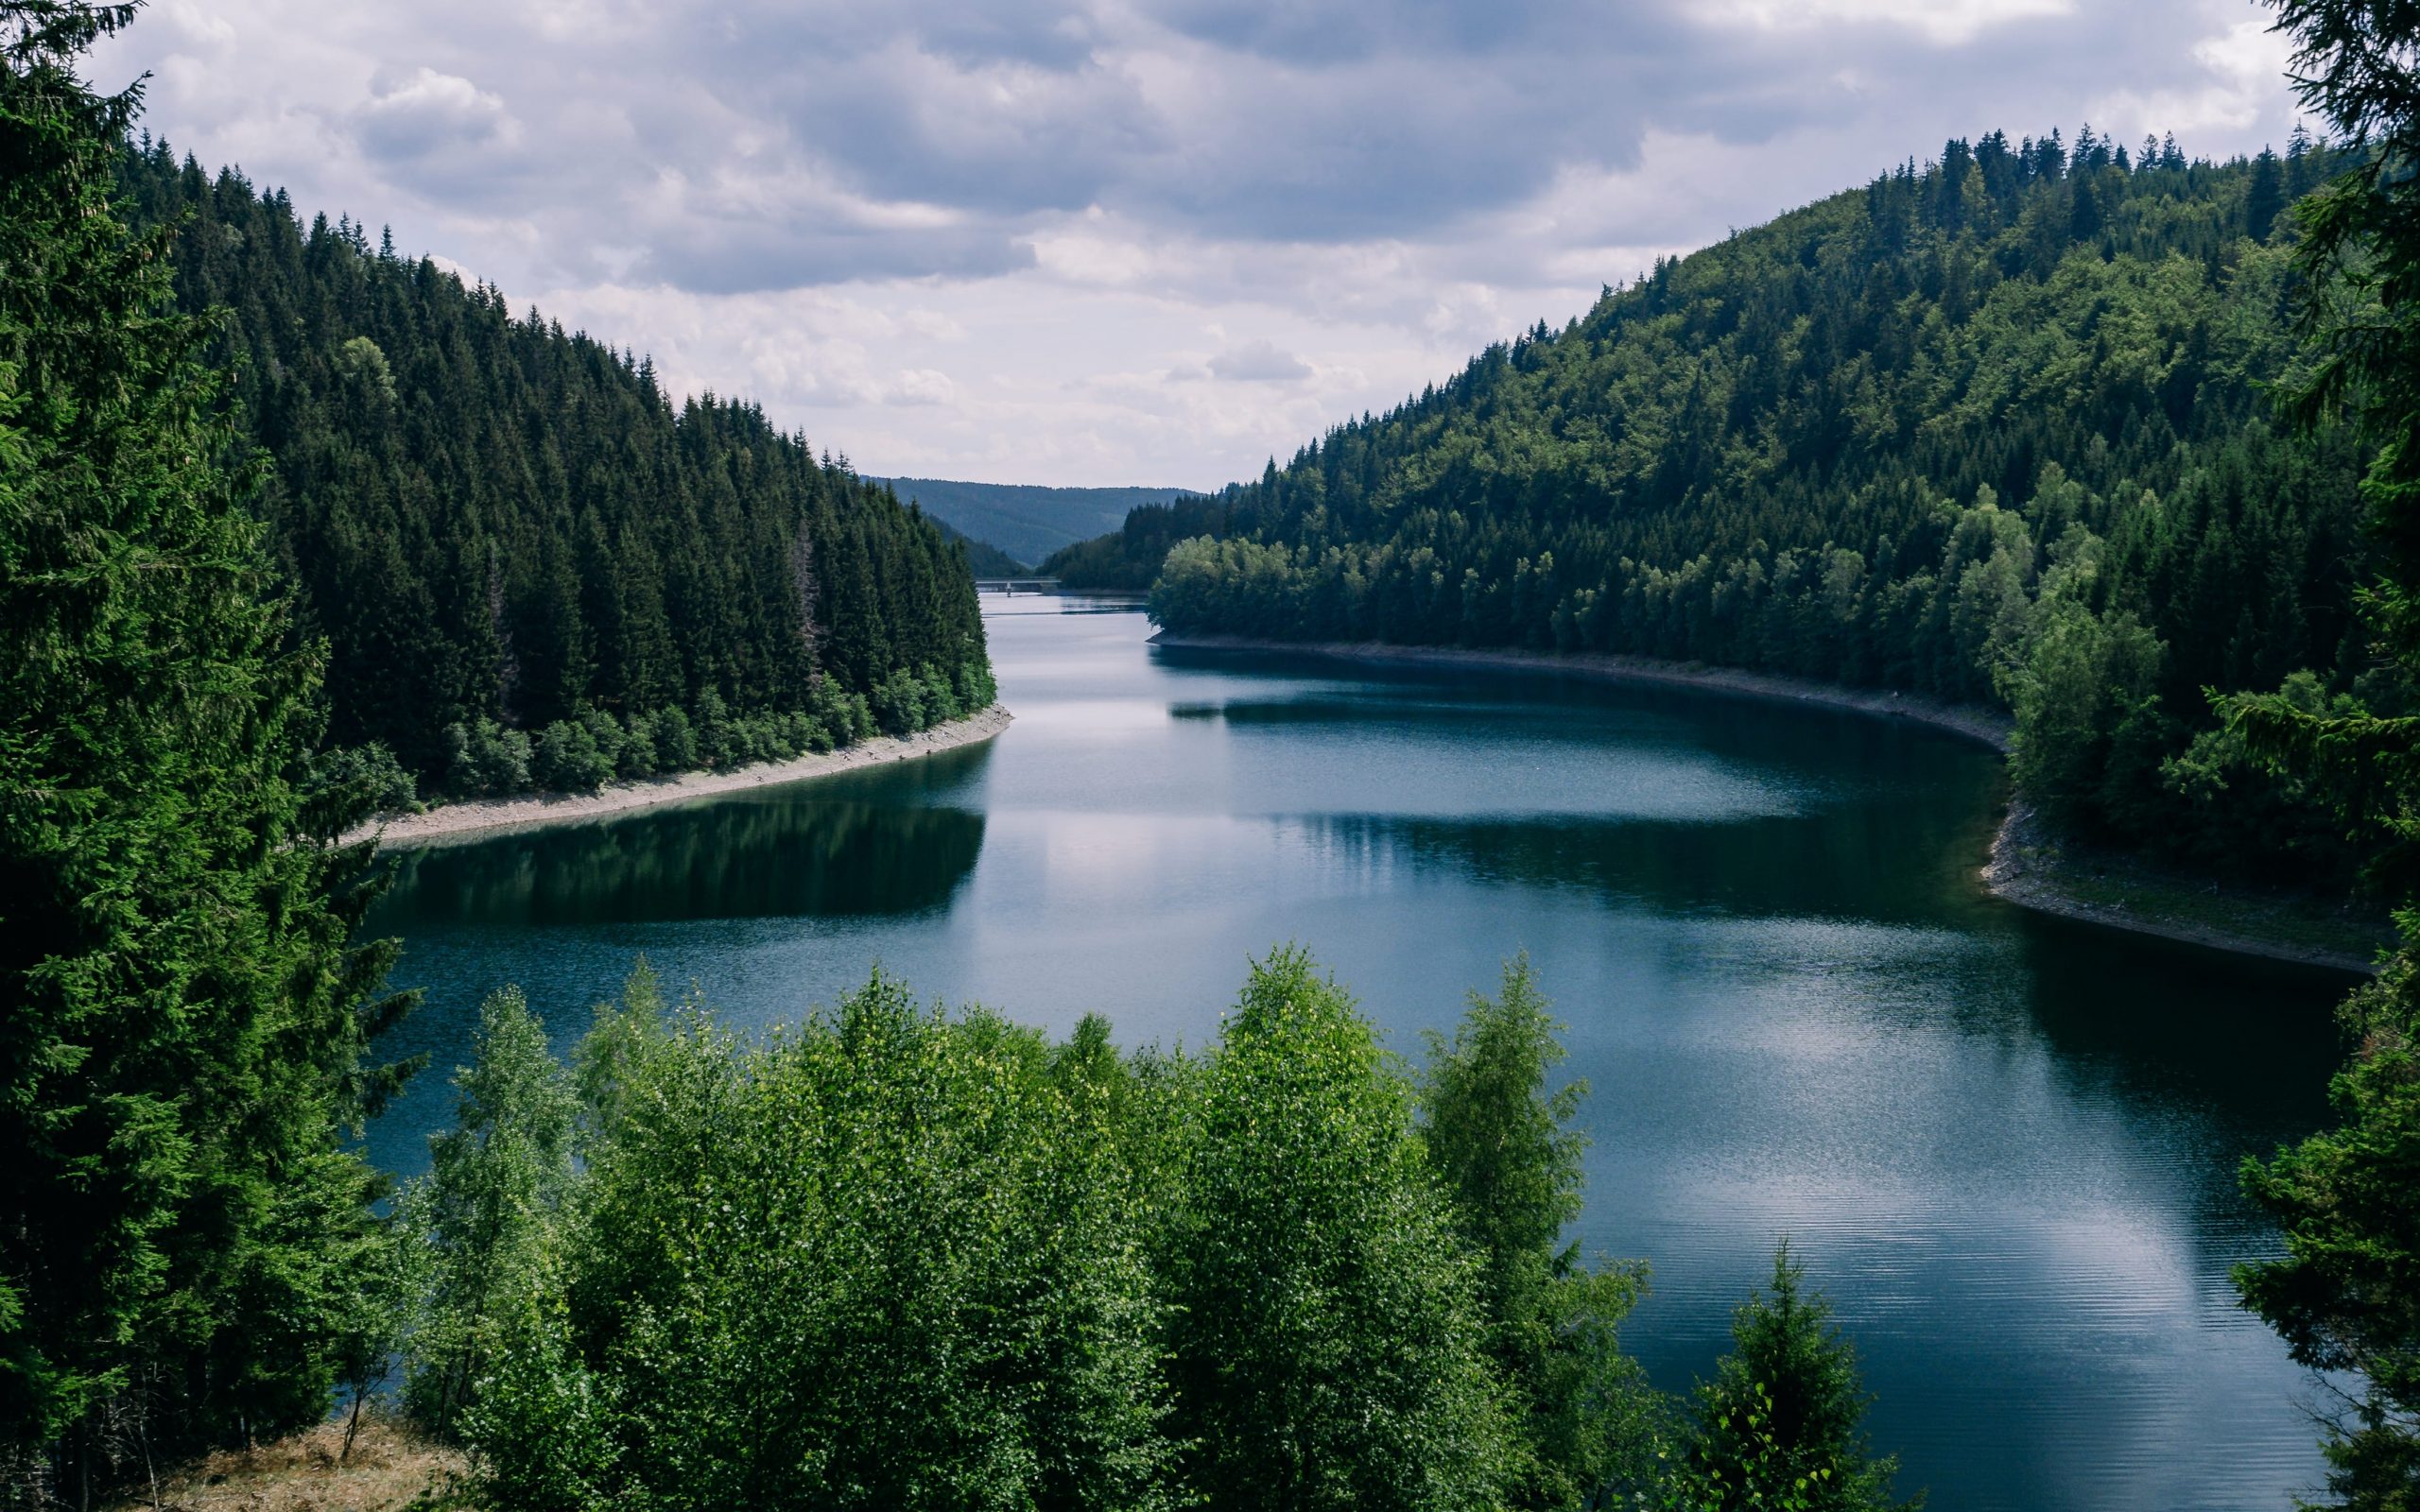 Bild von freepik zeigt eine schöne Aussicht auf See und Wald eine Vision, die therapinum bieten möchte